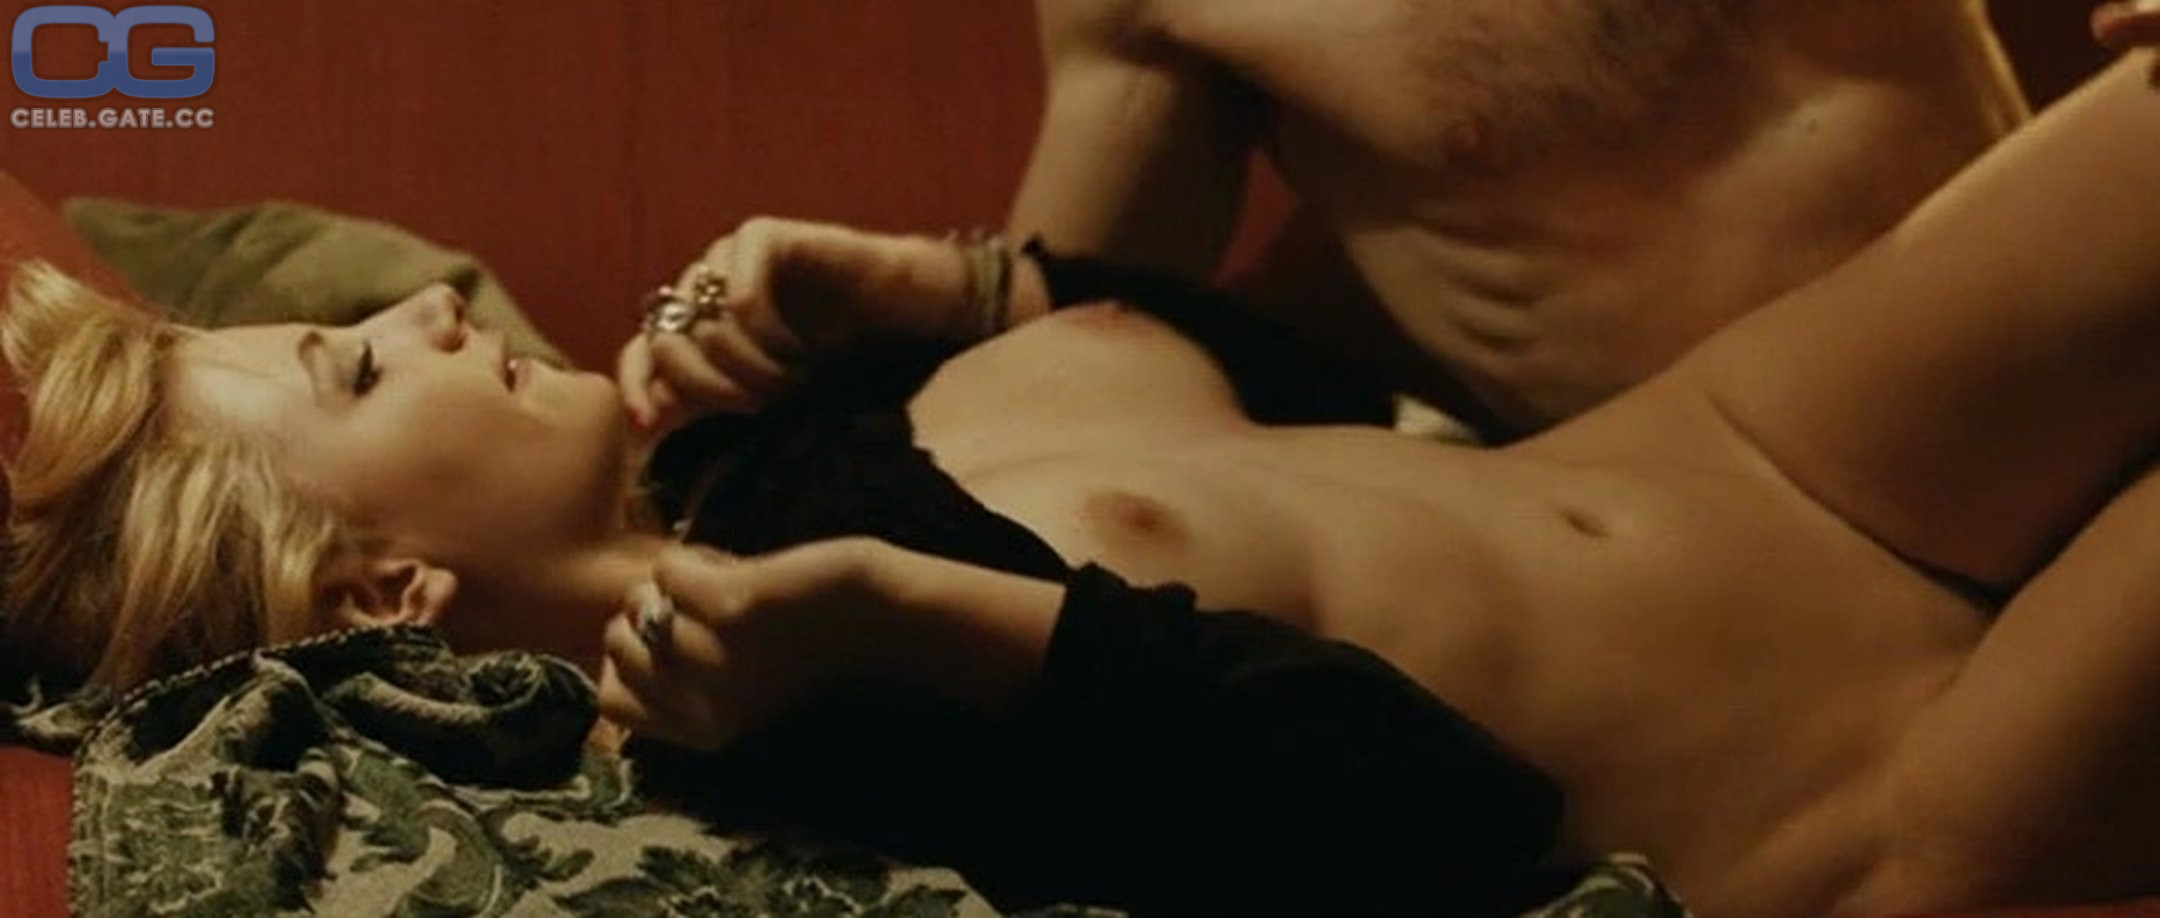 Miriam Giovanelli nude scene